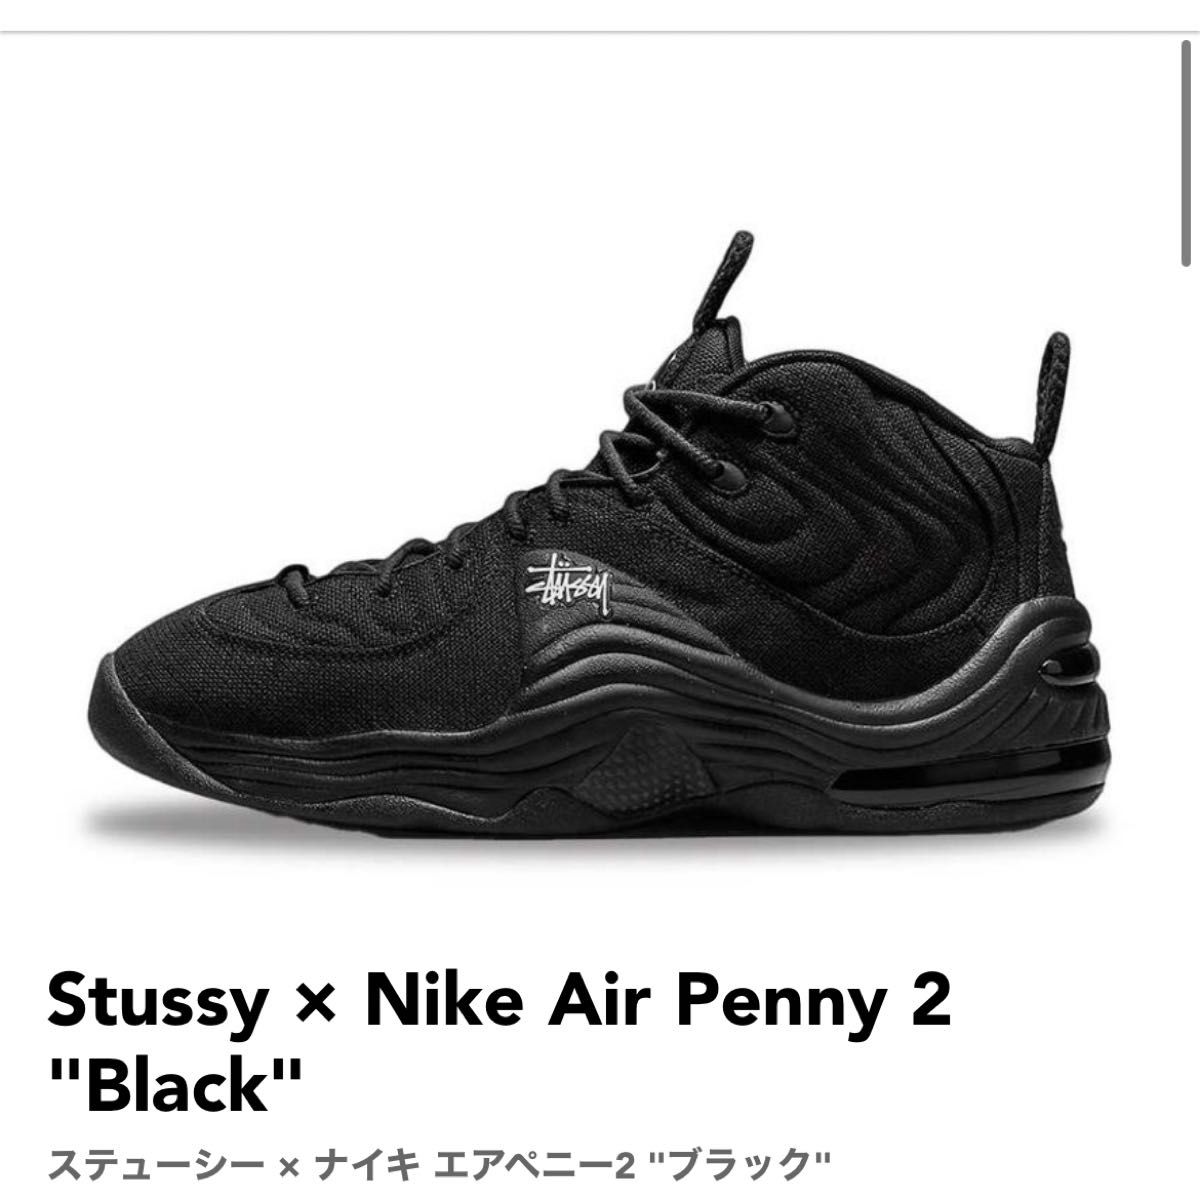 数量限定・即納特価!! ナイキ エアペニー2 Nike Air Penny 2 Stussy